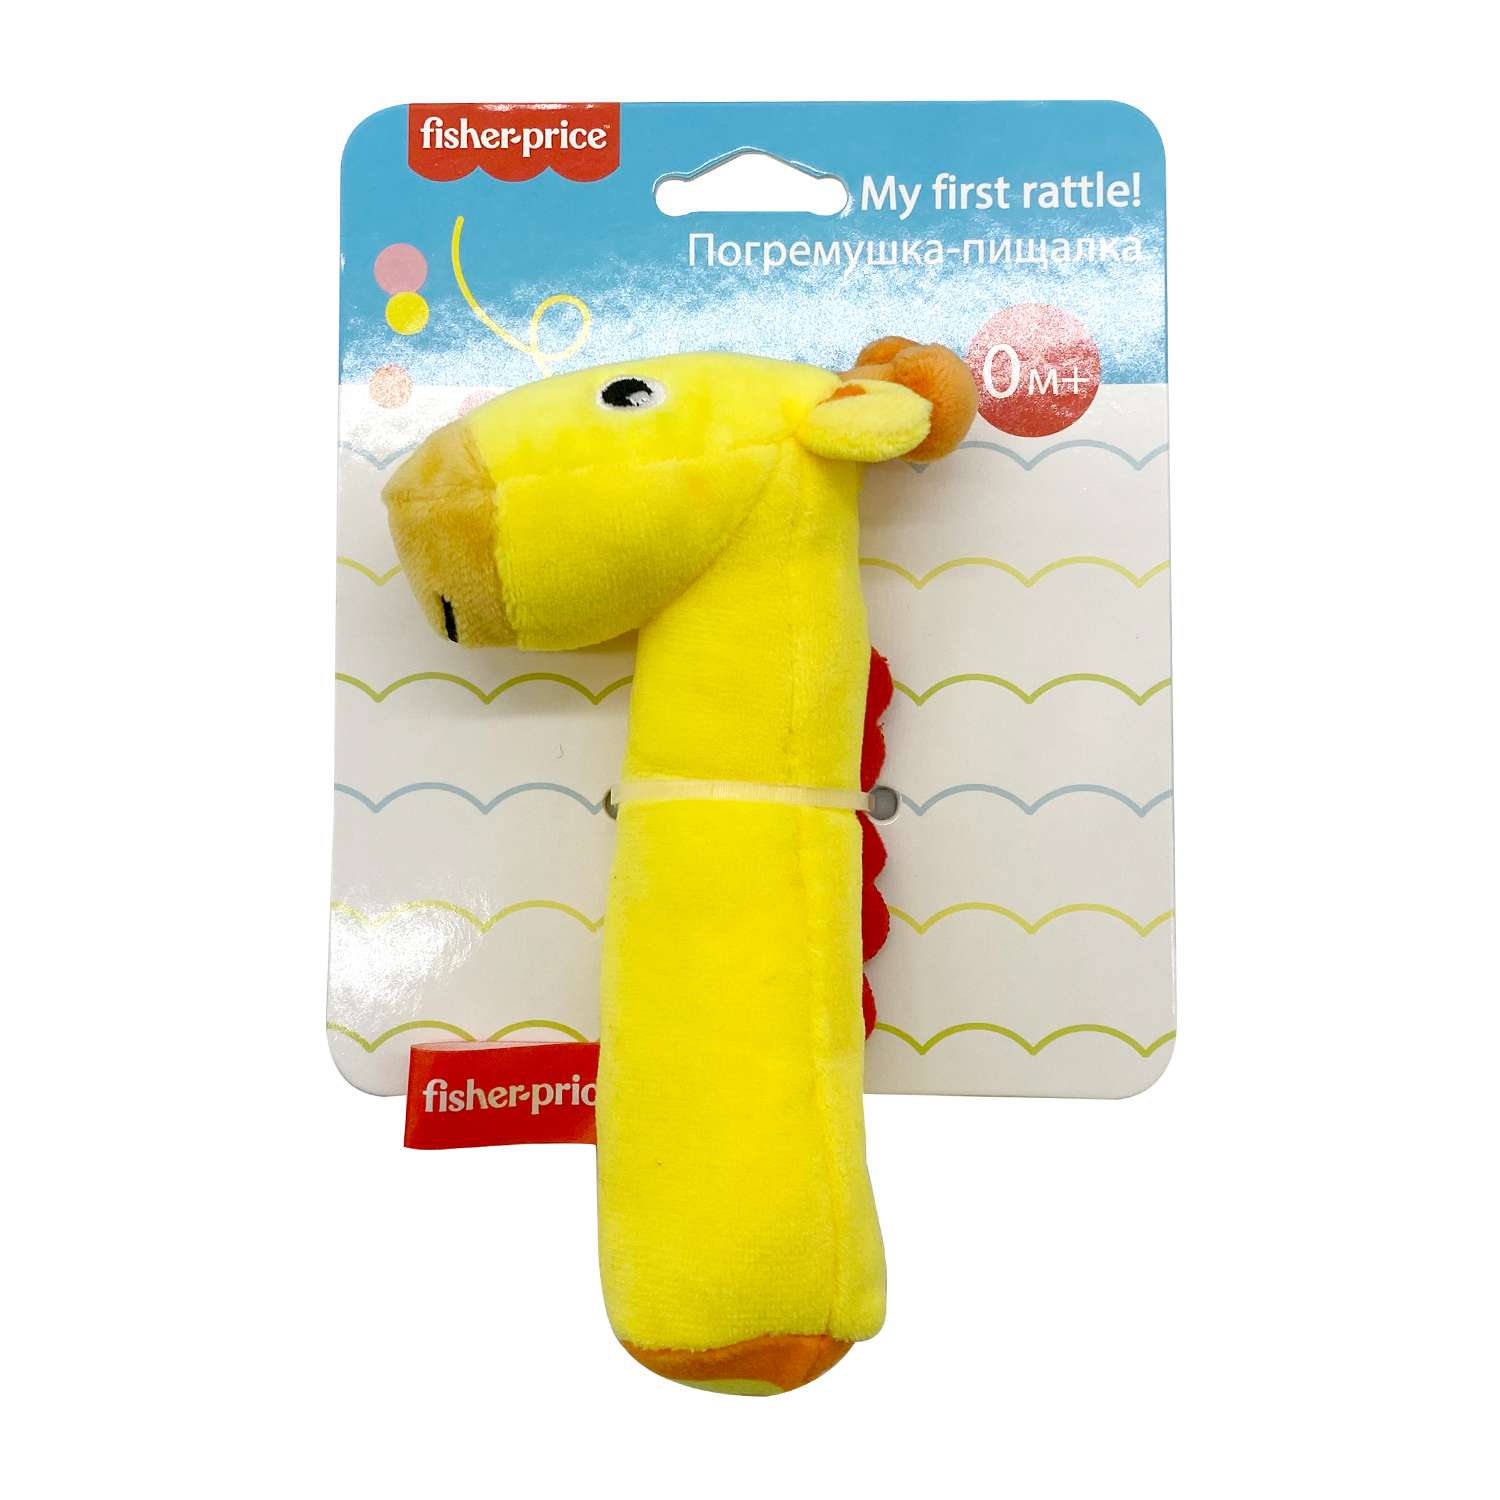 Погремушка-пищалка Fisher Price Жирафик развивающая мягкая игрушка для детей 0+ - фото 2